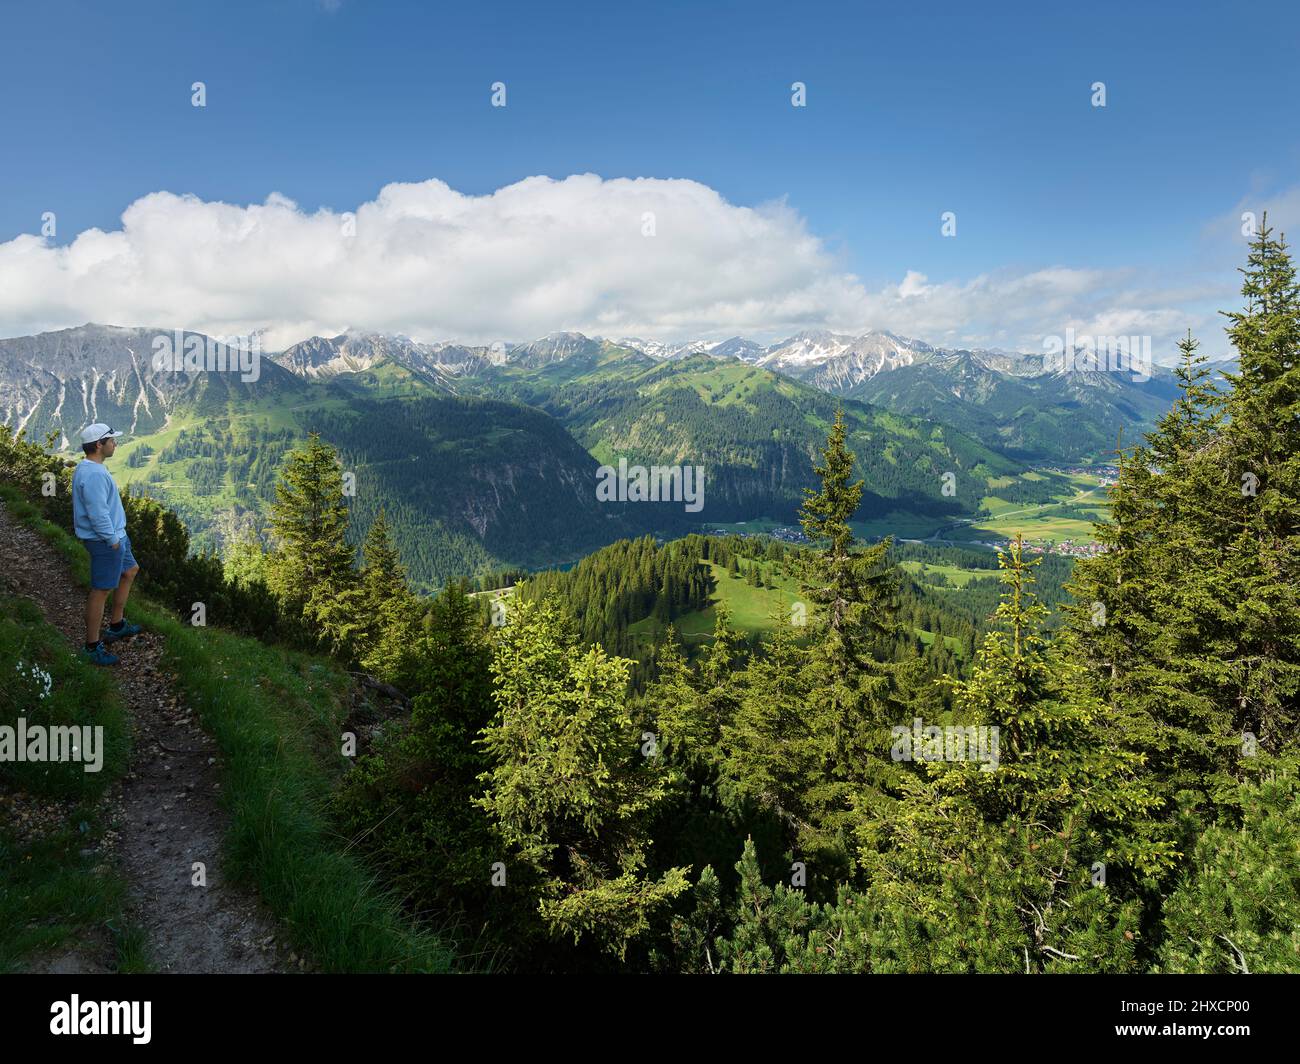 Allgäu Alps from Füssener Jöchl, Tannheimer Tal, Tyrol, Austria Stock Photo